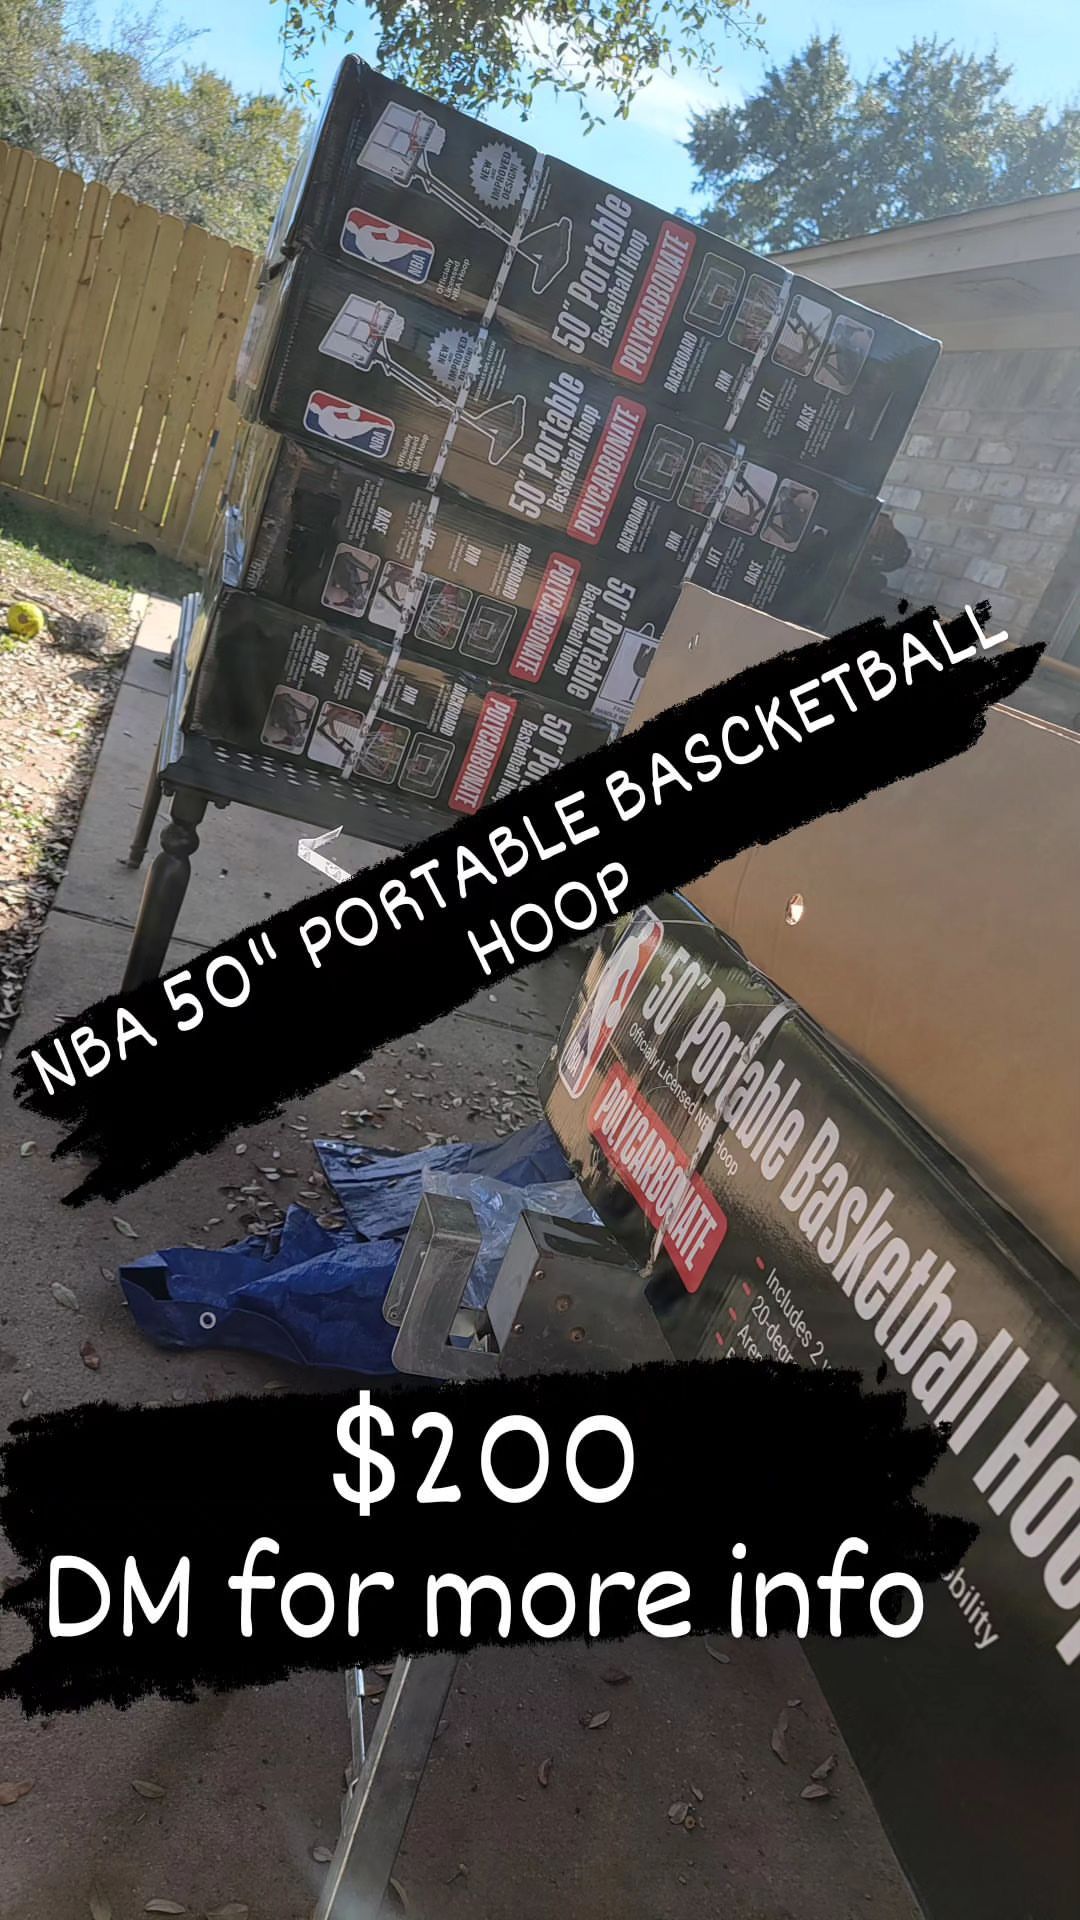 NBA 50’’ PORTABLE BASKETBALL HOOP